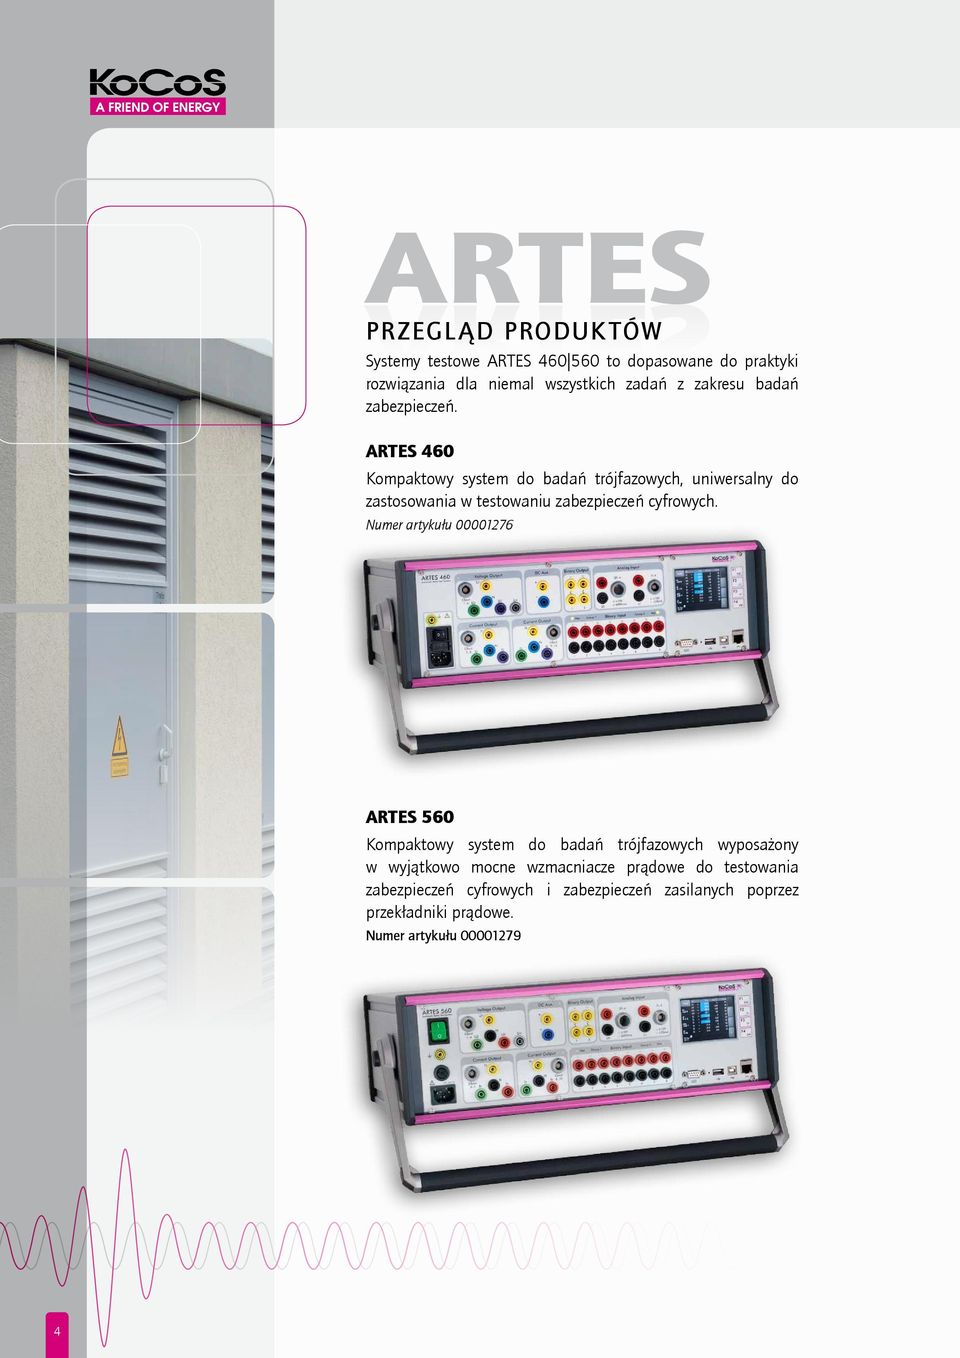 ARTES 460 Kompaktowy system do badań trójfazowych, uniwersalny do zastosowania w testowaniu zabezpieczeń cyfrowych.